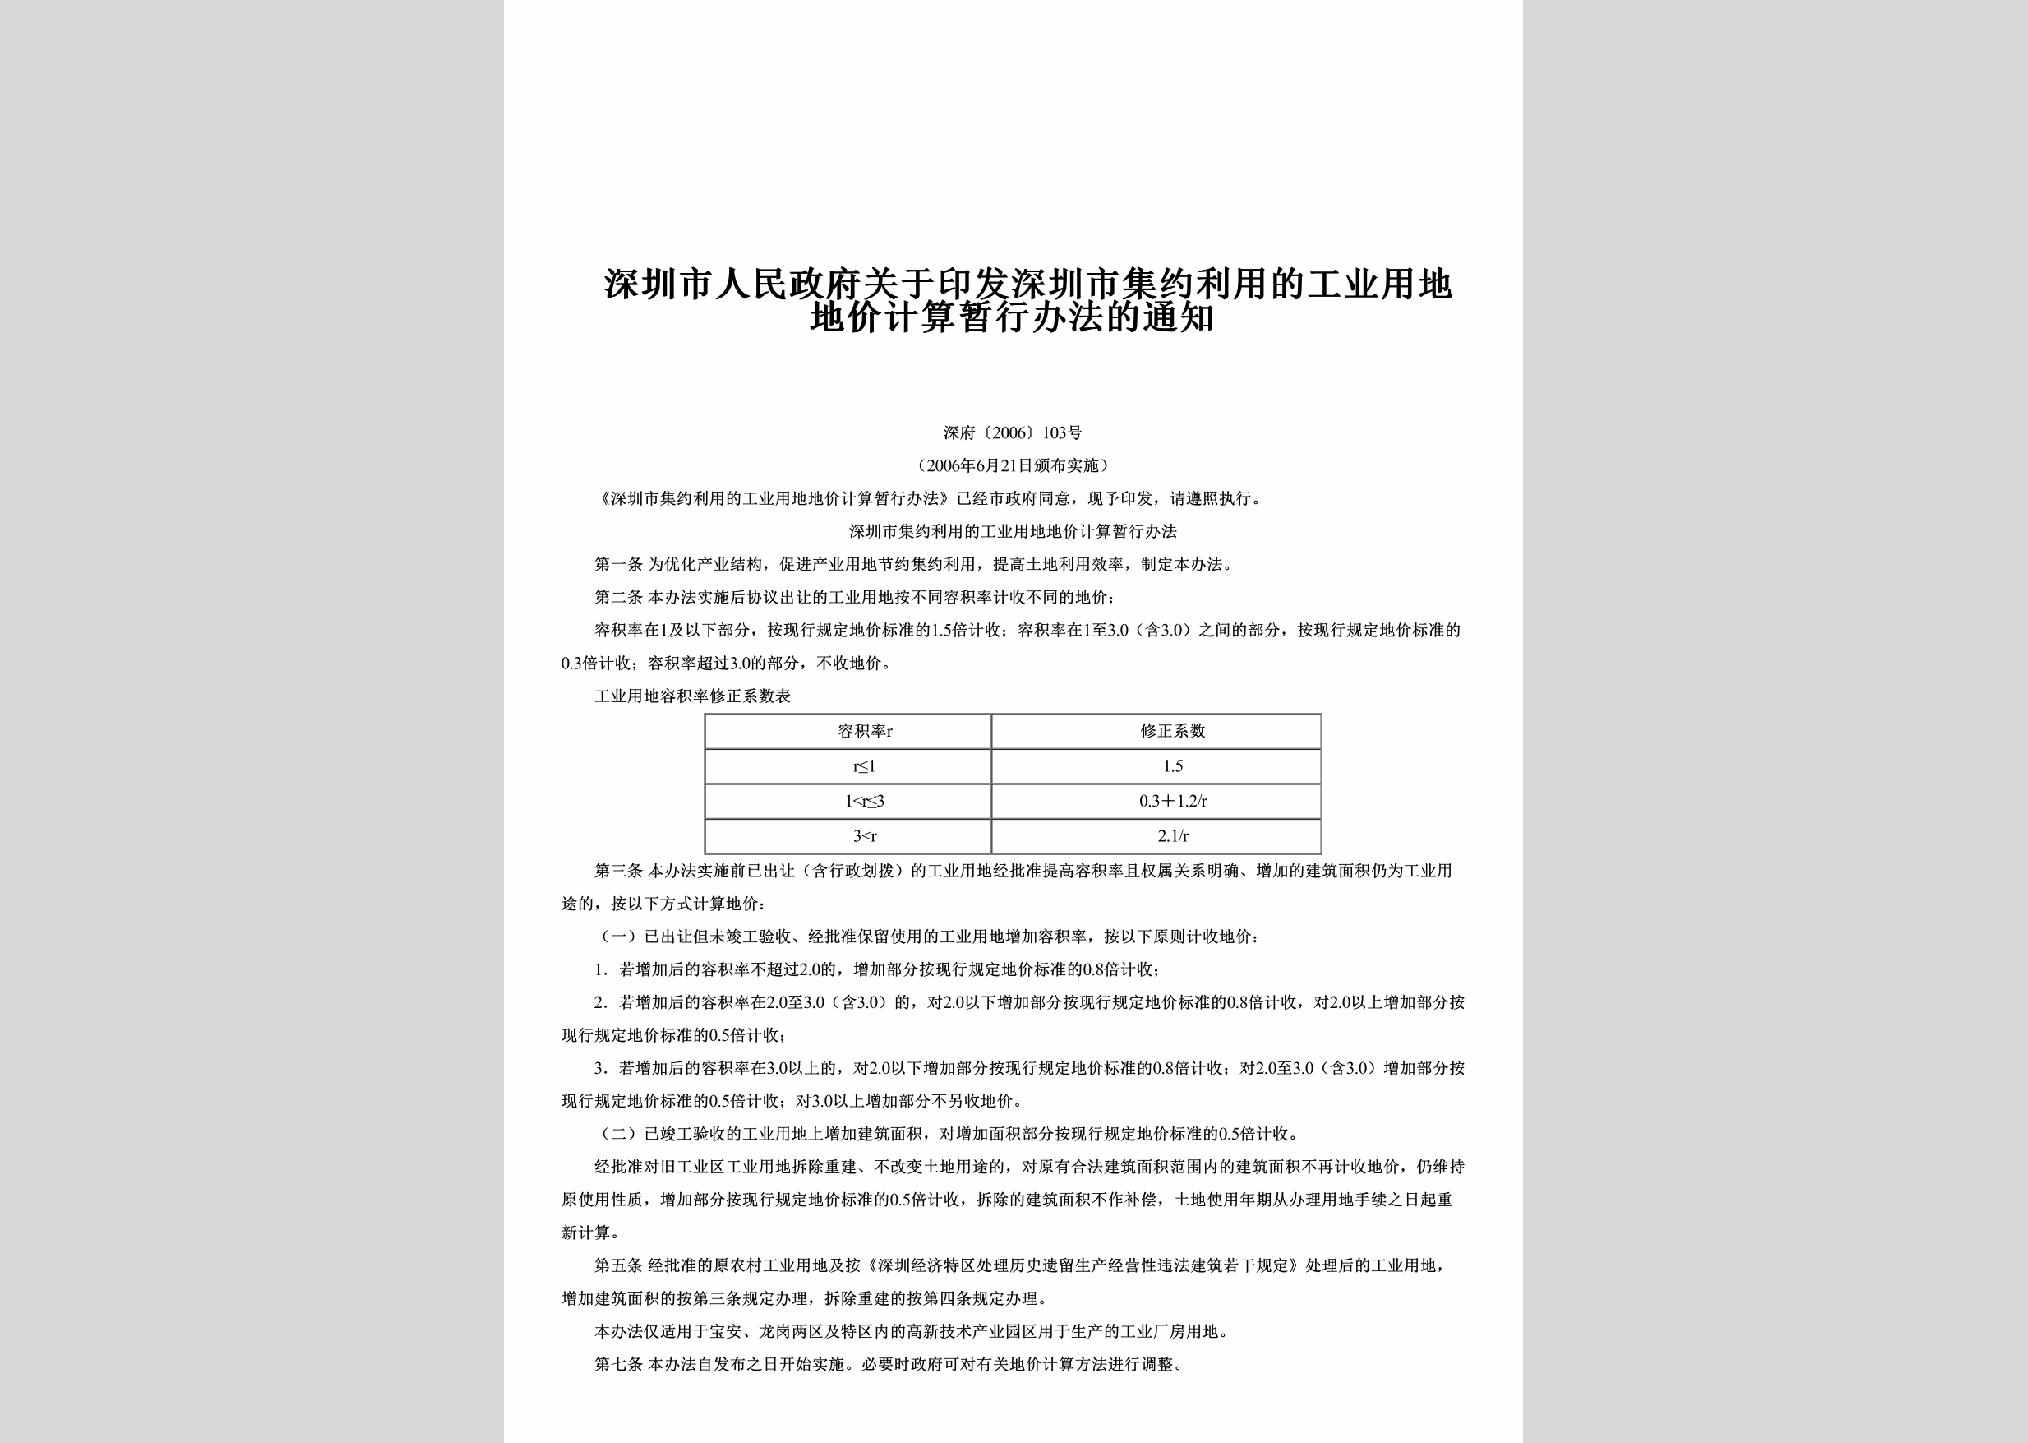 深府[2006]103号：关于印发深圳市集约利用的工业用地地价计算暂行办法的通知